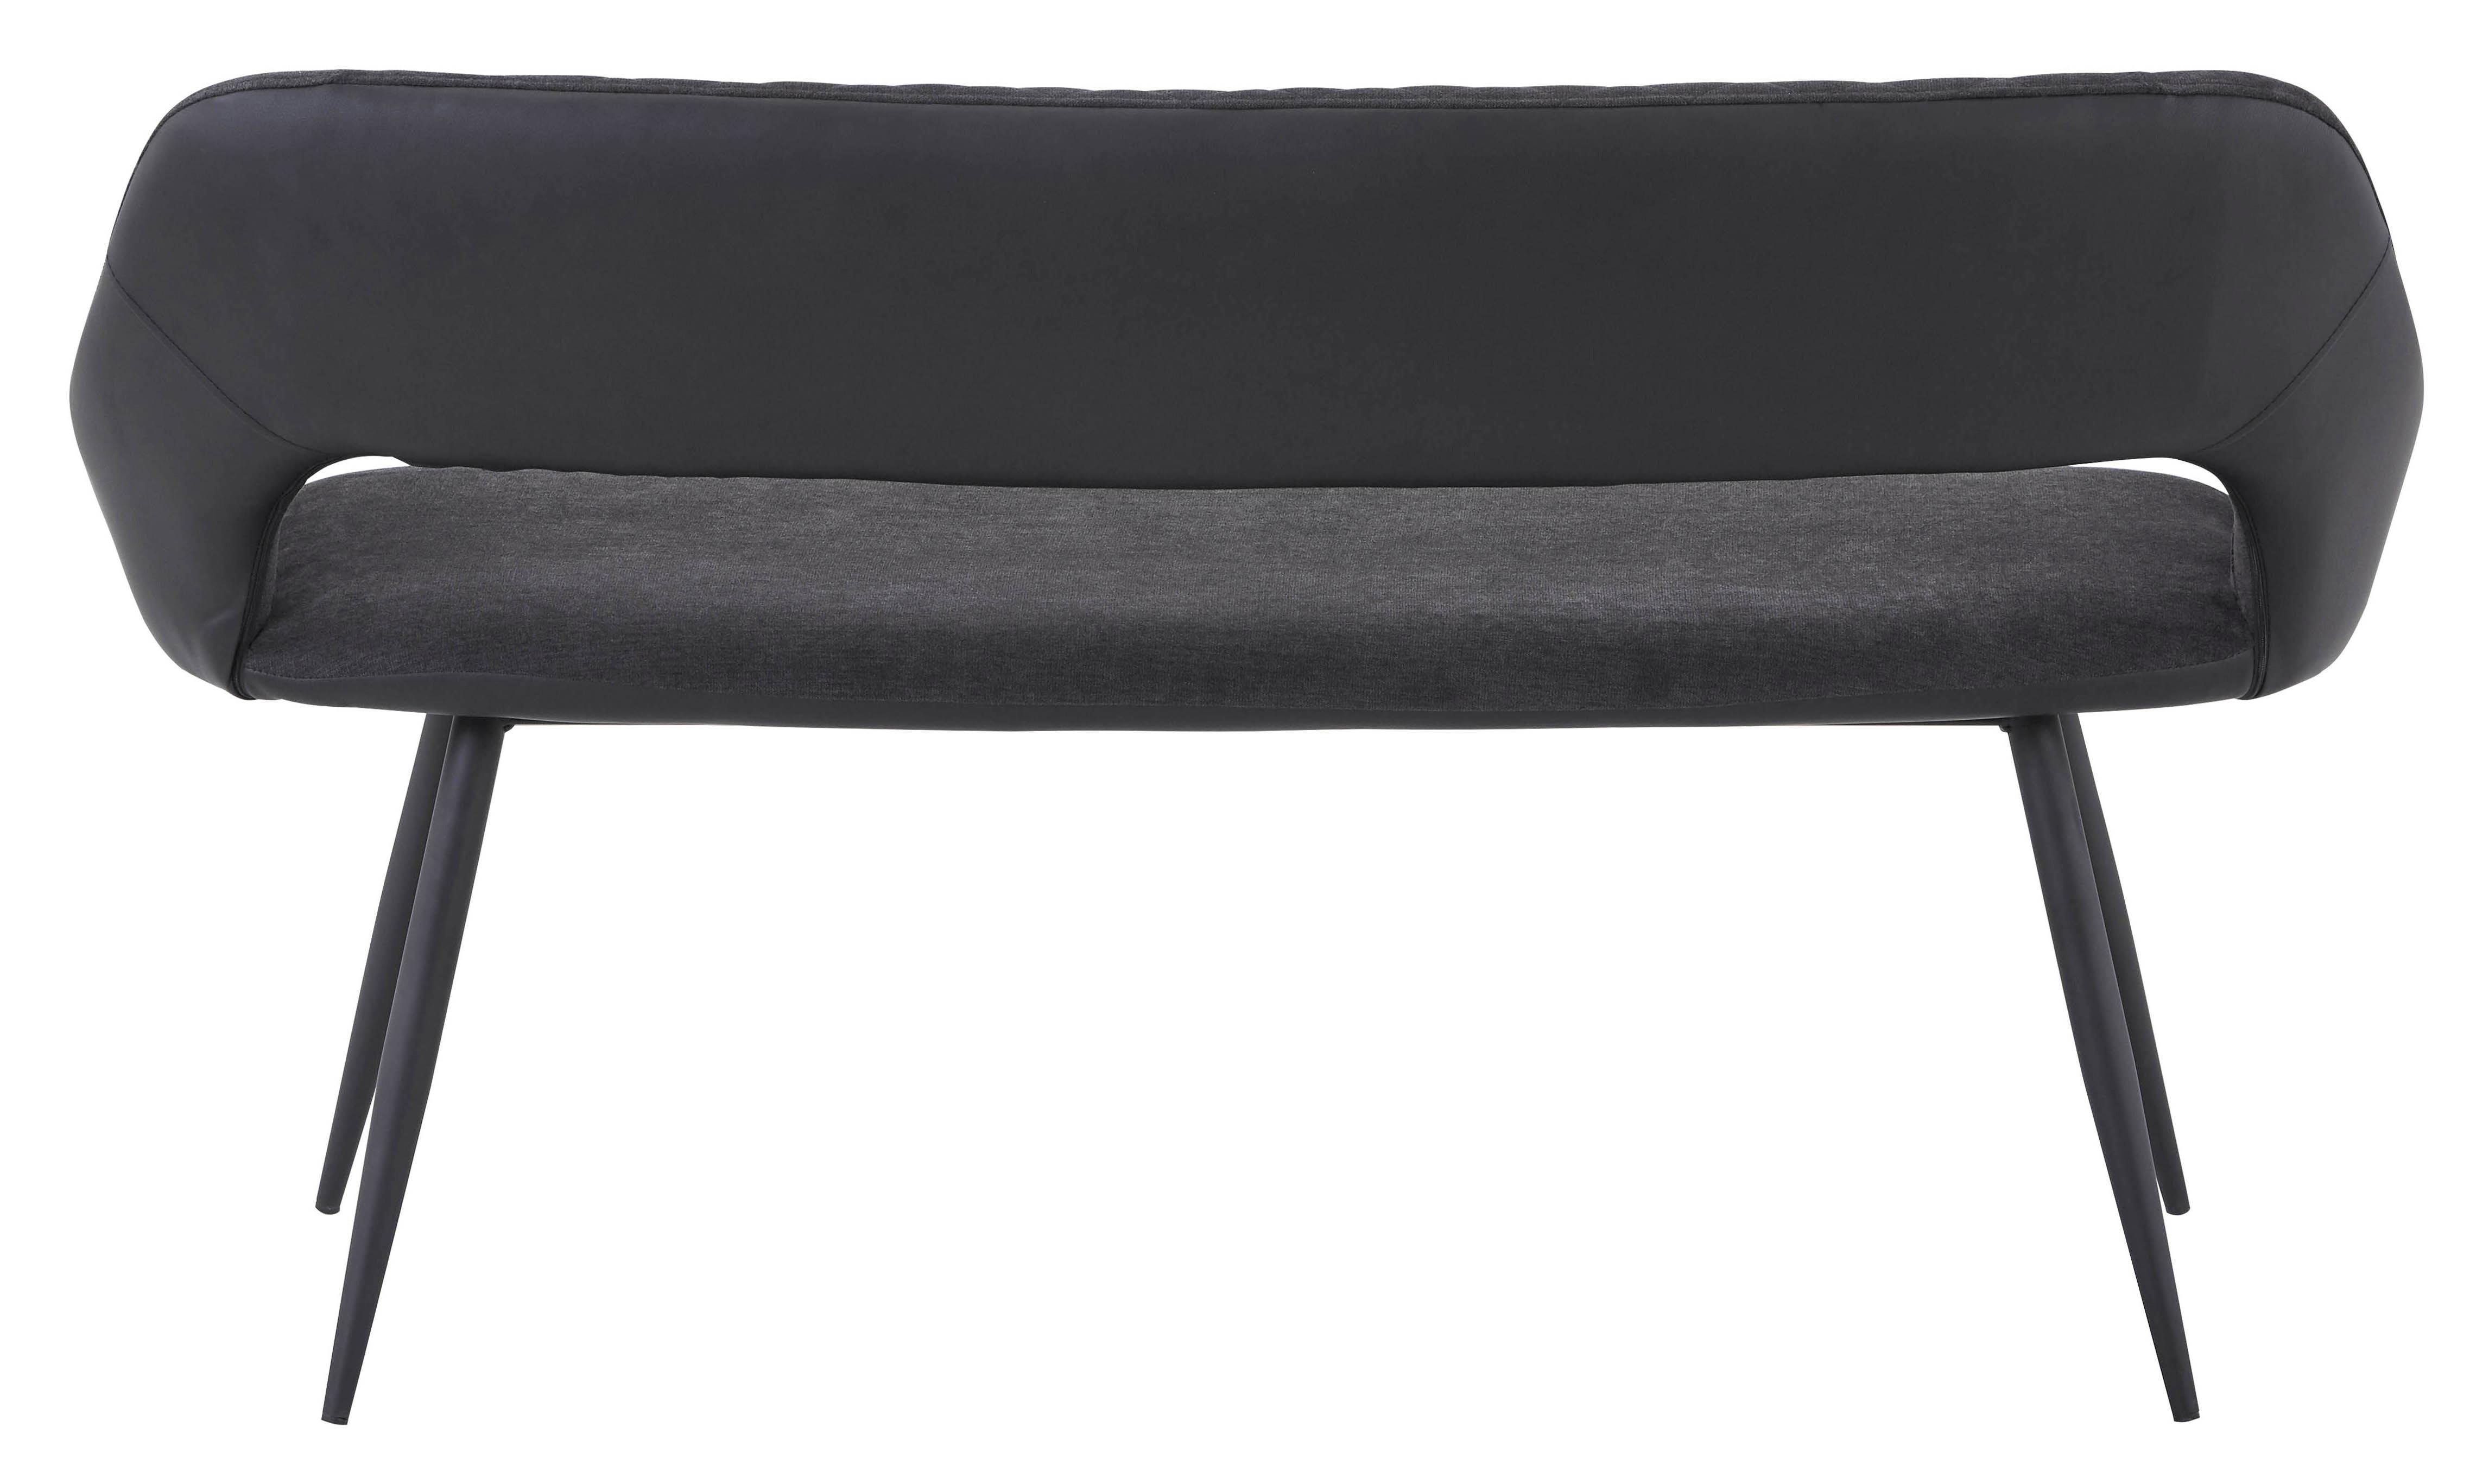 Sitzbank mit Lehne Gepolstert Anthrazit Porto B: 140 cm - Anthrazit/Schwarz, MODERN, Textil/Metall (140/80/62cm) - MID.YOU